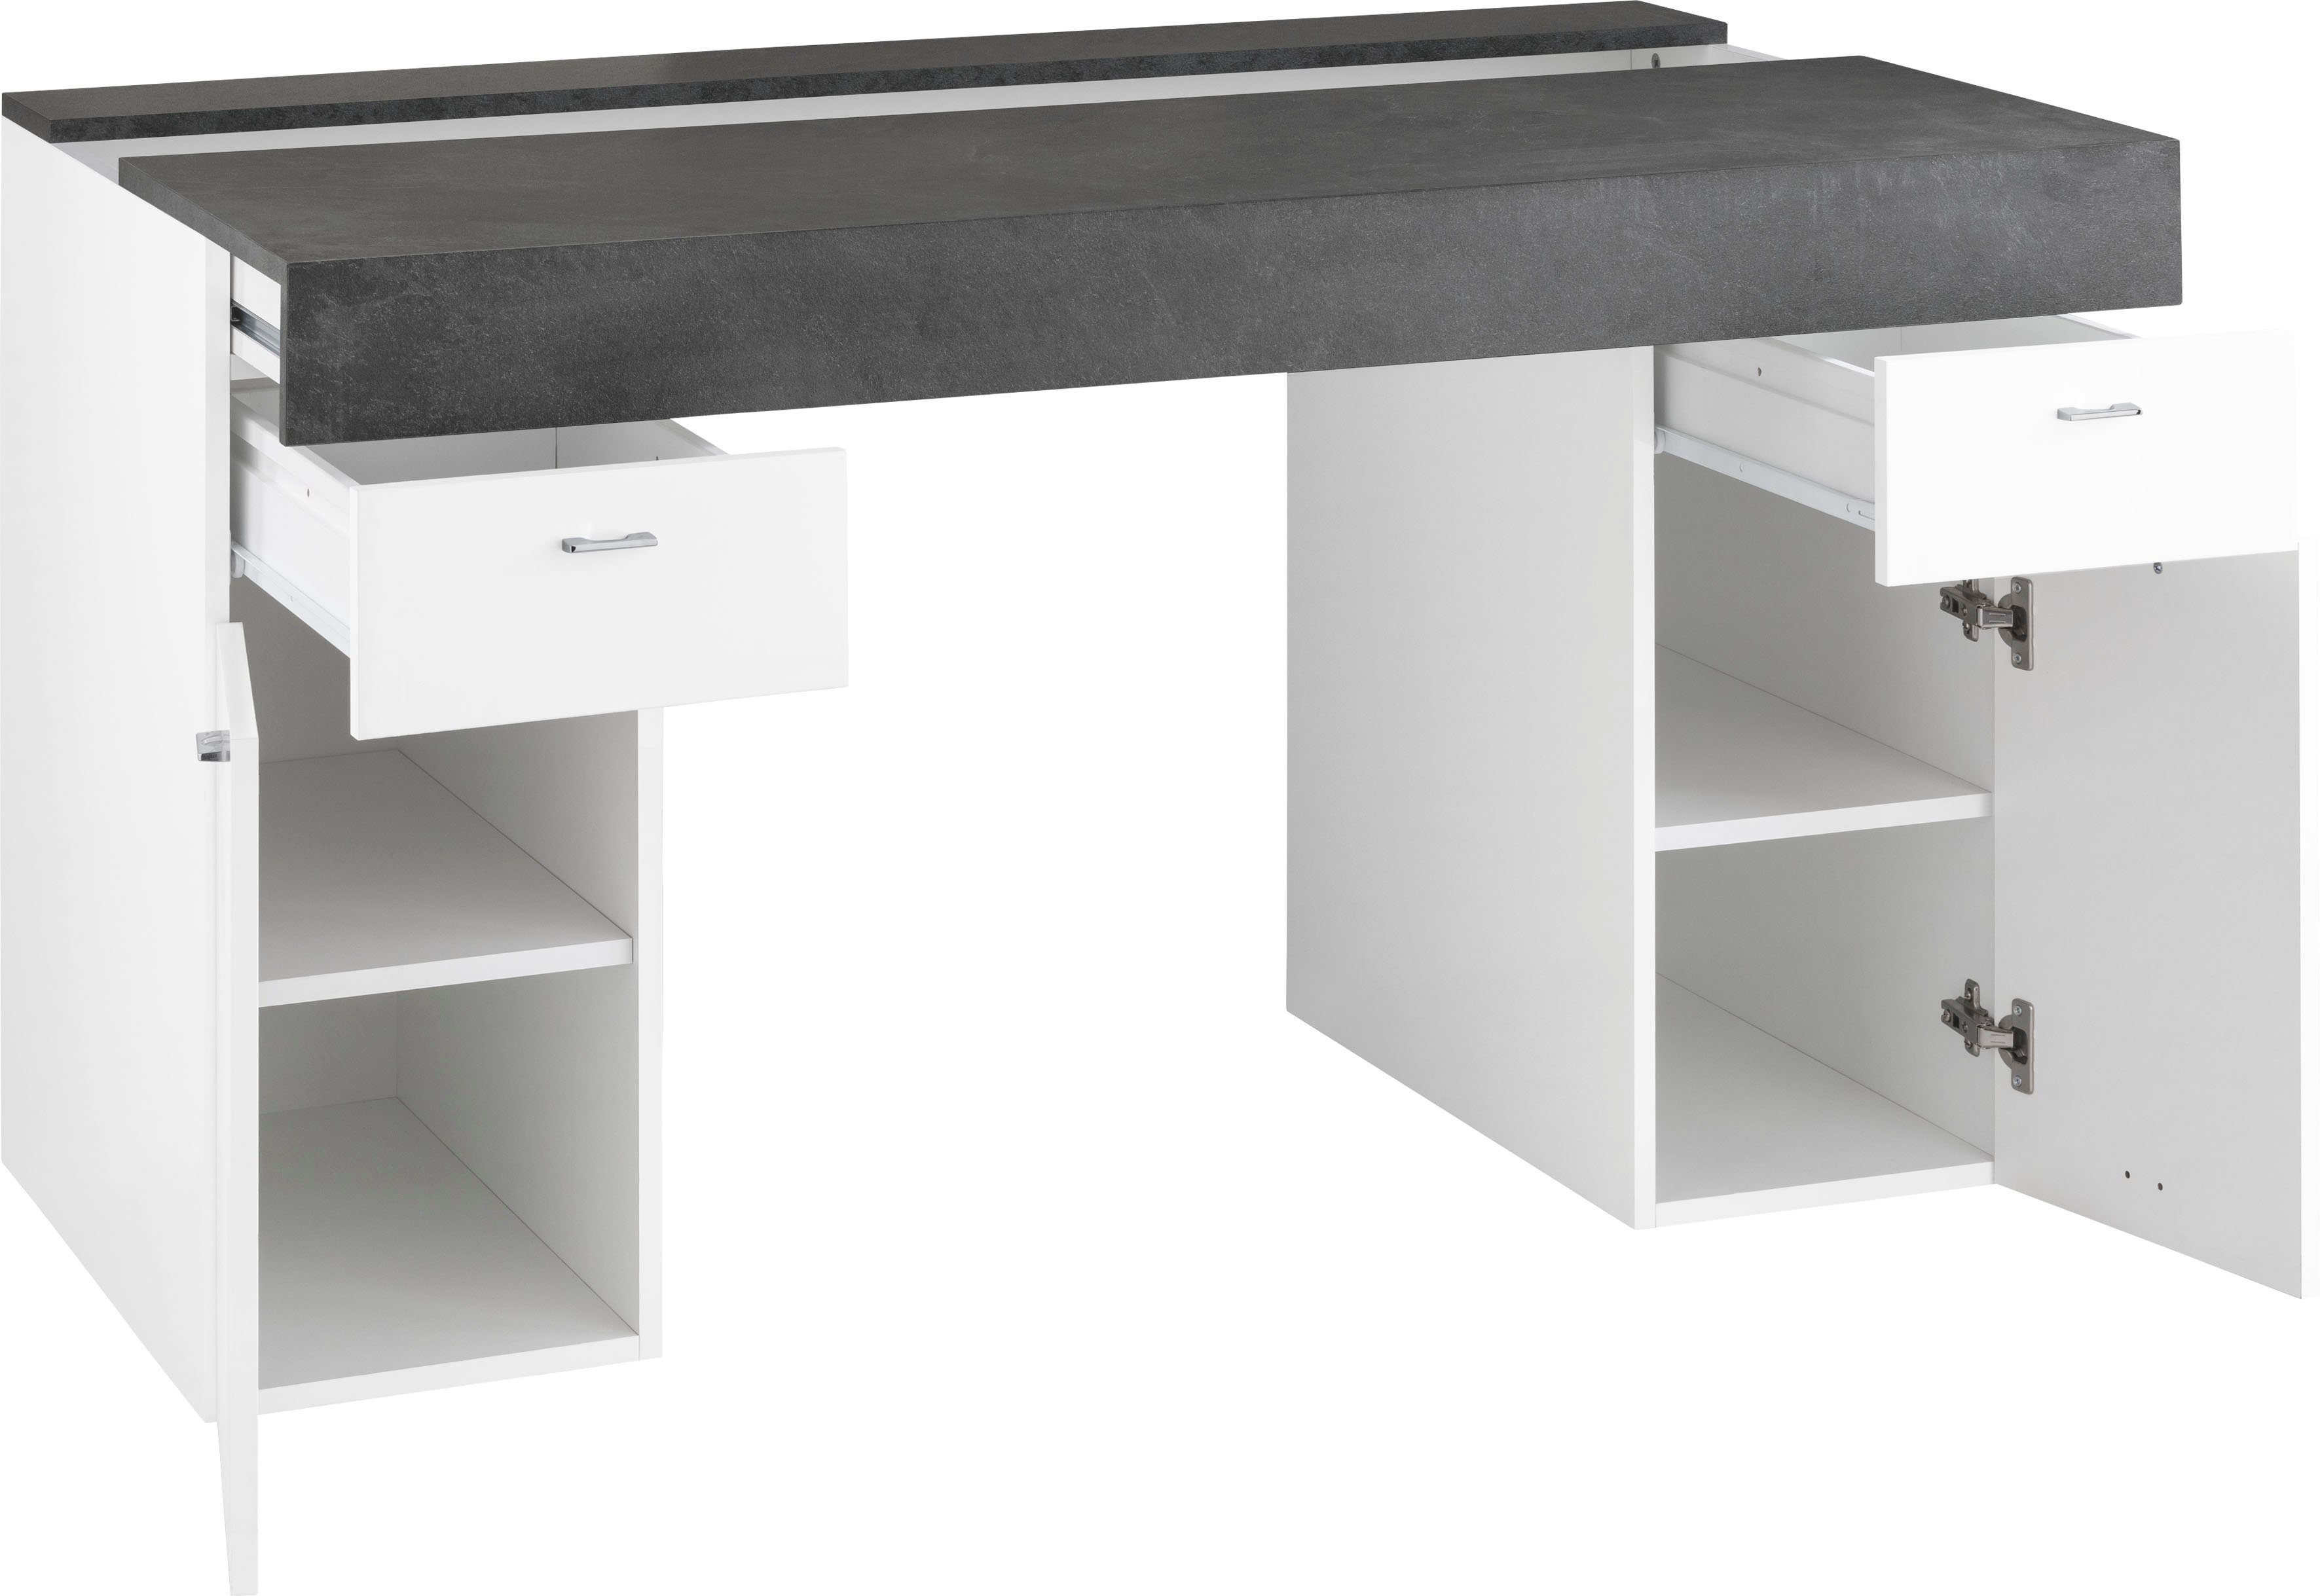 | Tischplatte Schreibtisch Tecnos /schiefer weiß Hochglanz Sliding, schiefer ausziehbar